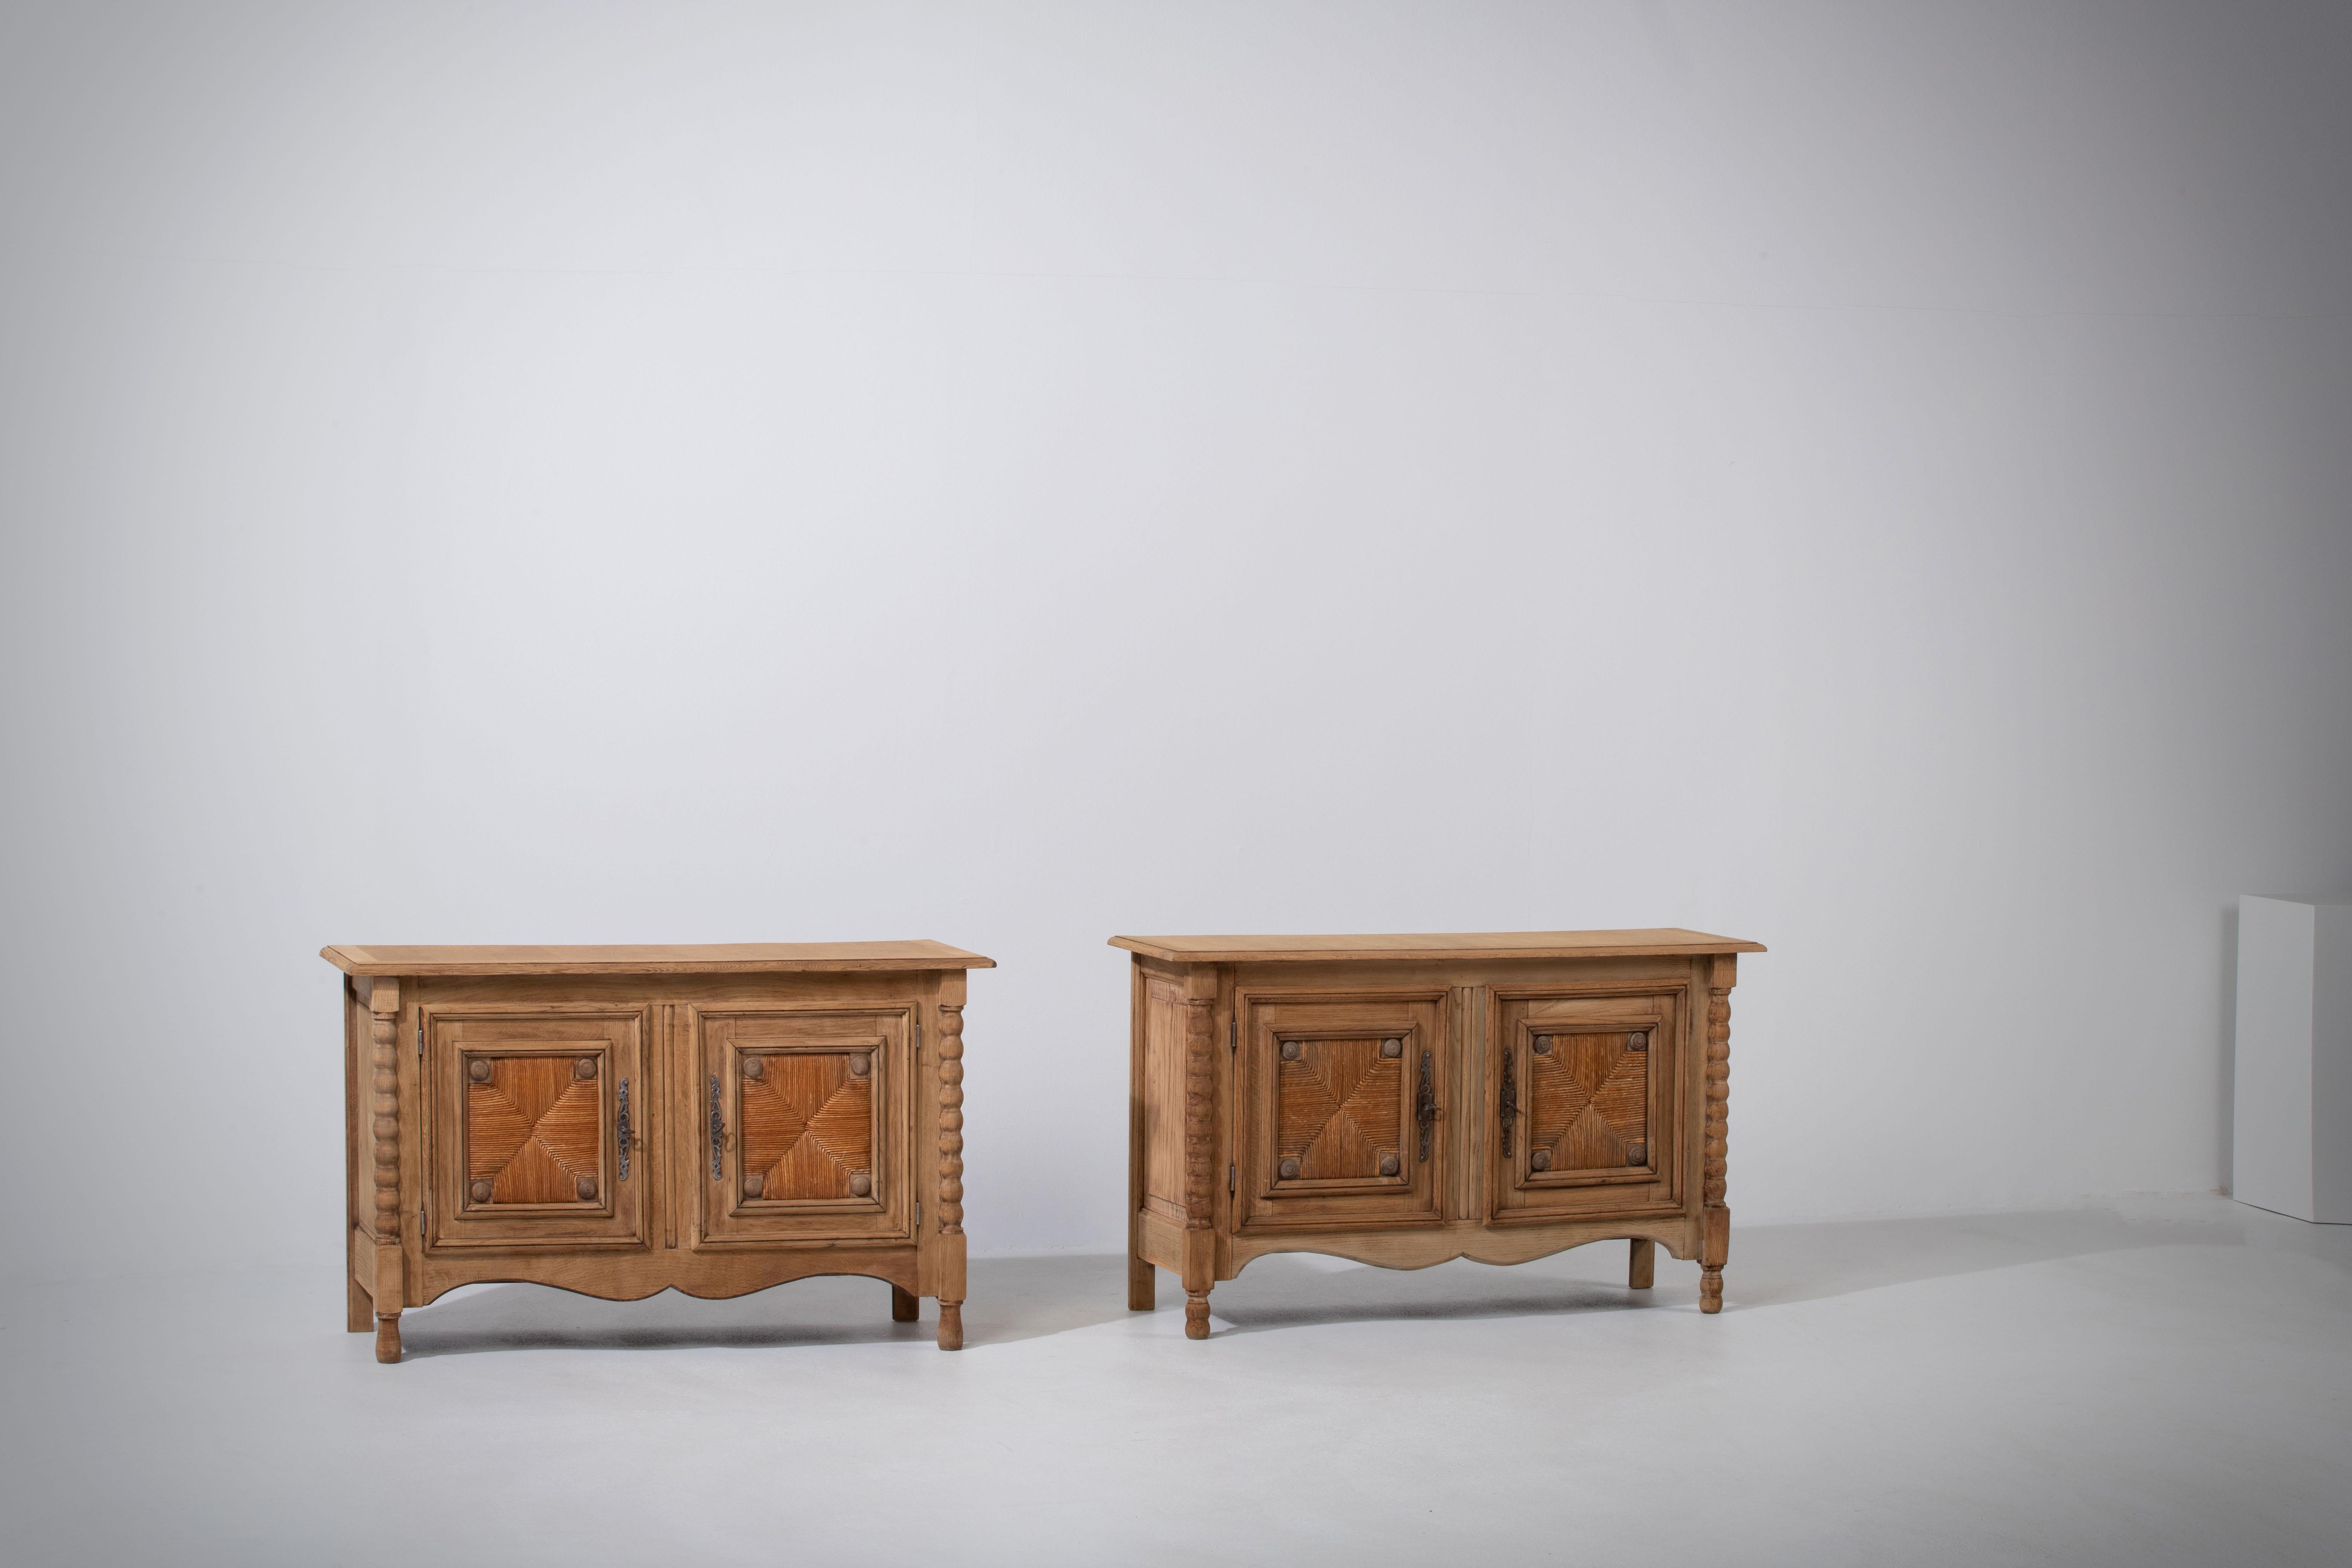 Une paire d'armoires provençales à deux portes de France, vers 1940.
Représentant l'esthétique à la fois décontractée et raffinée de la campagne française, patinée, mettant en valeur la texture naturelle du bois et les subtils ornements sculptés.